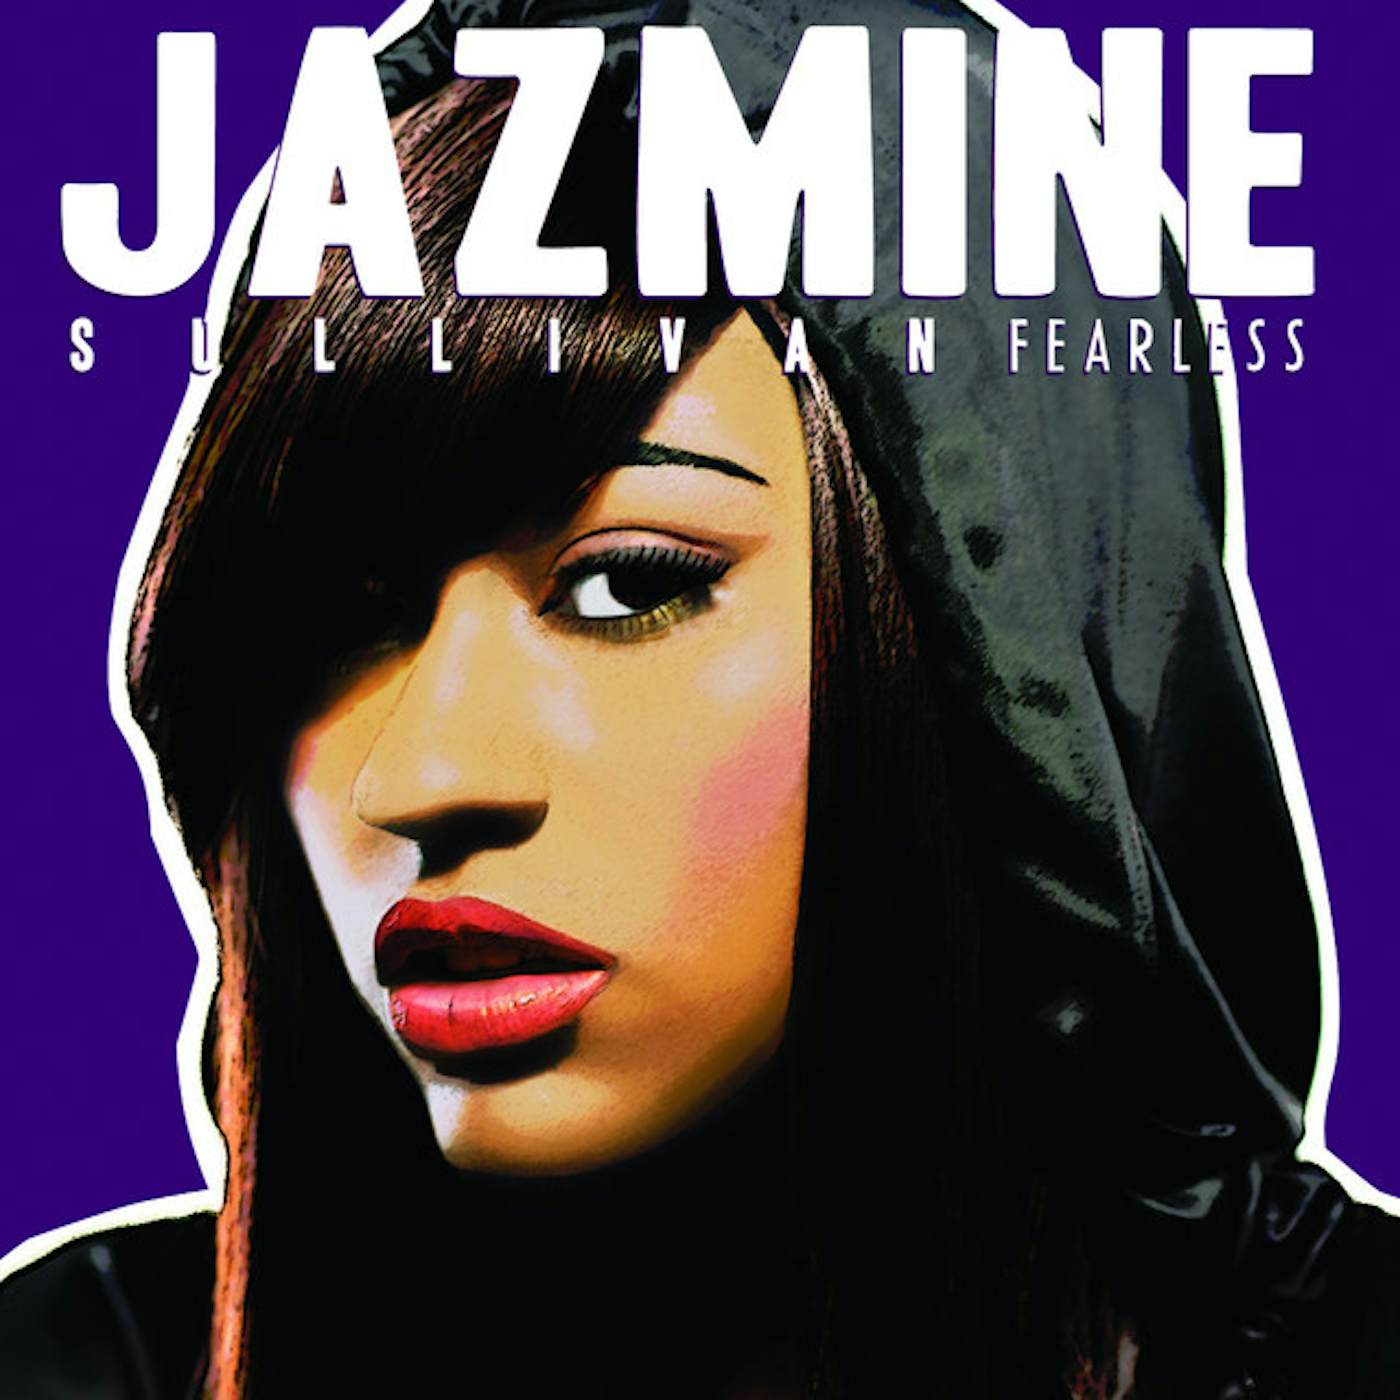 Jazmine Sullivan FEARLESS CD